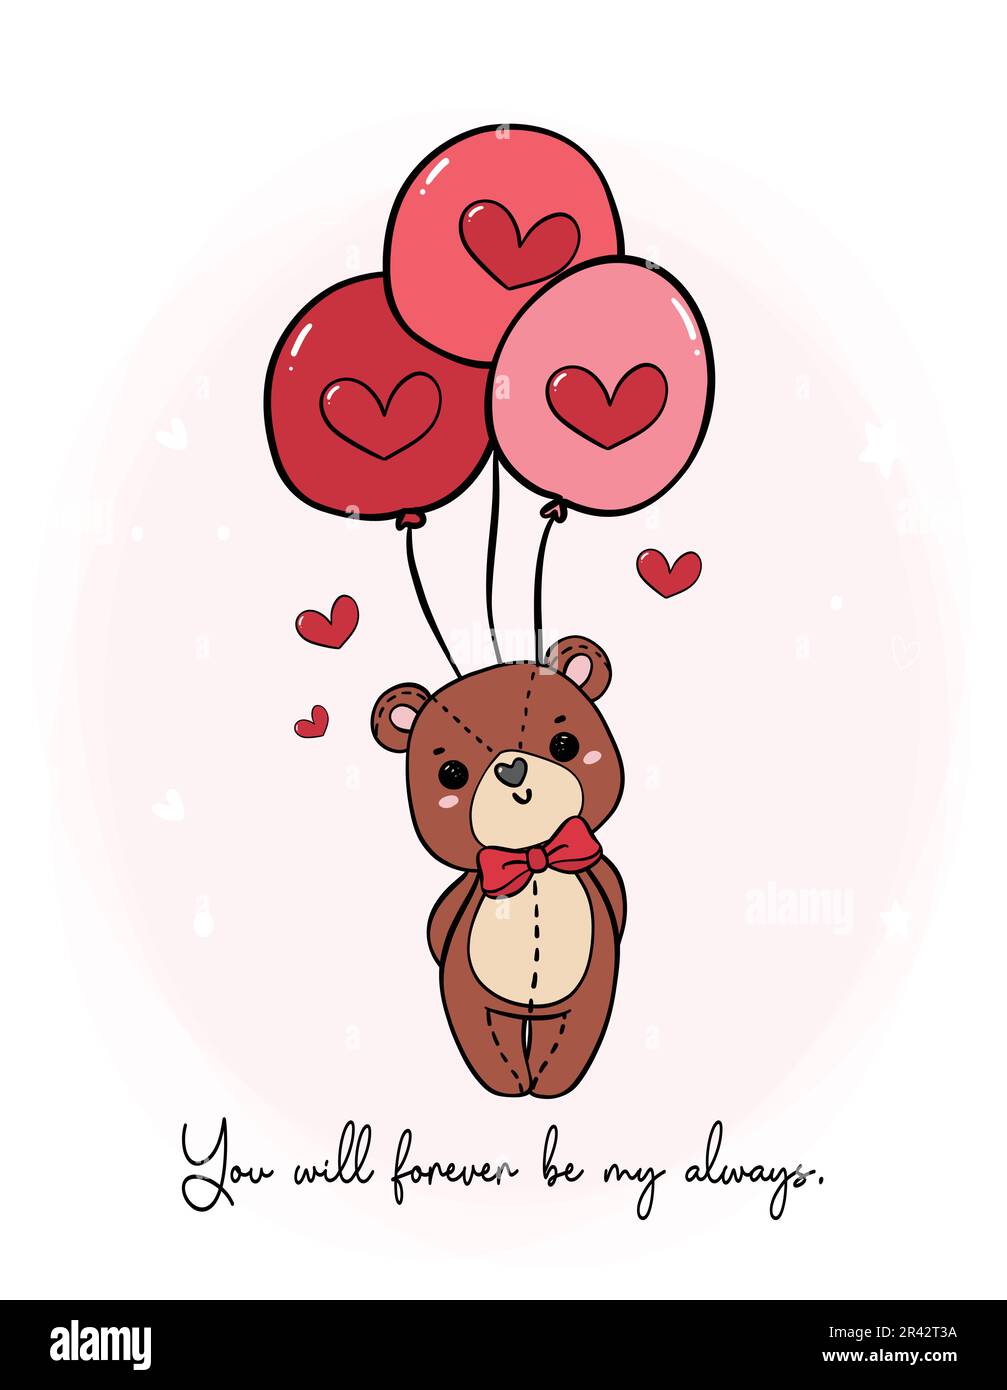 Der süße, romantische Teddybär trägt eine rote Schleife, verdeckt Liebesballons und kritzelt handgezeichnet Zeichentrickfiguren isoliert auf weißem Hintergrund Stock Vektor